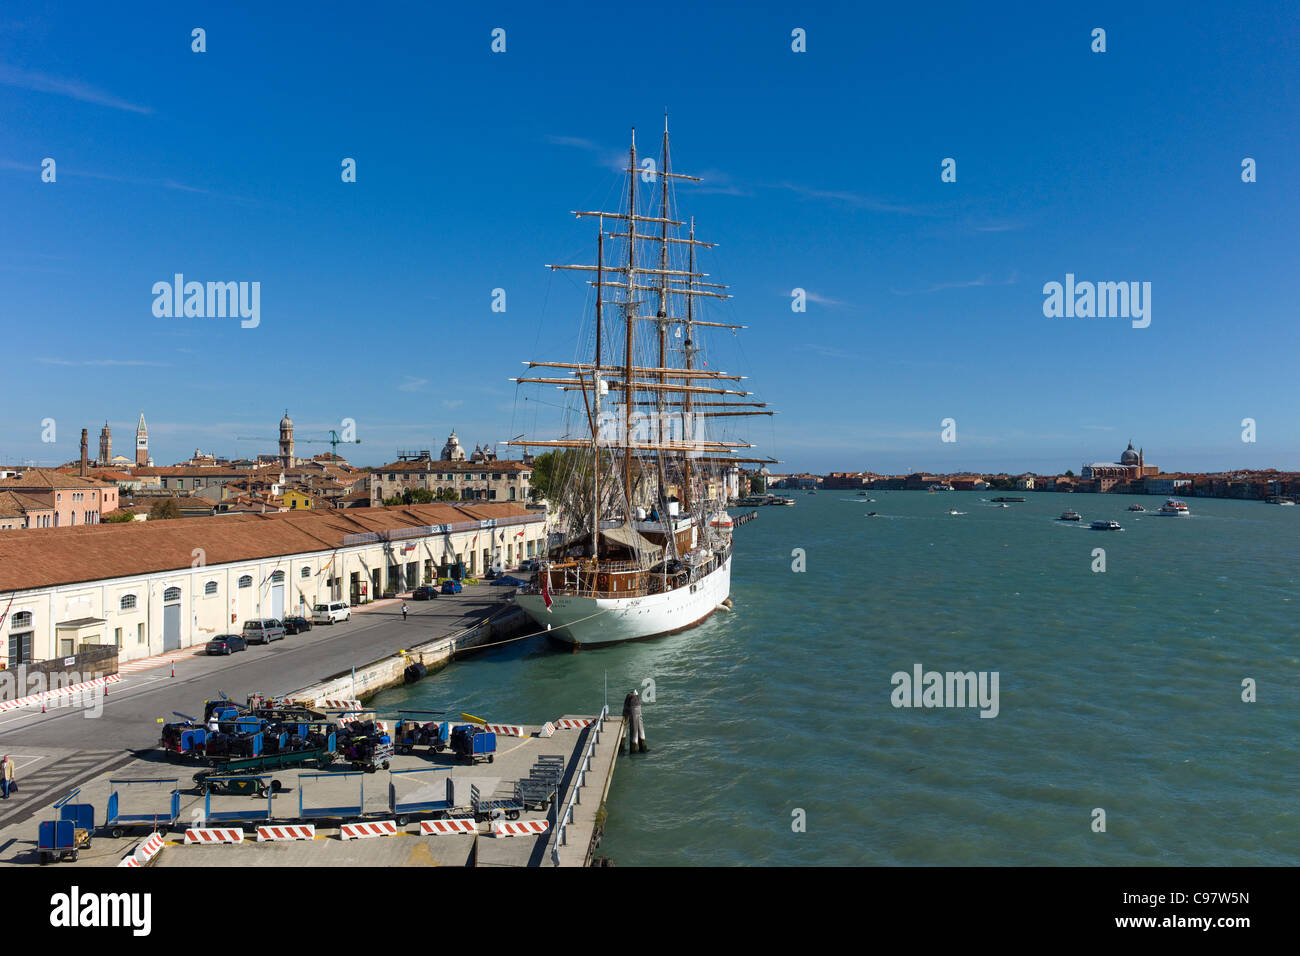 Sailing cruiseship Sea Cloud, Sea Cloud Cruises, on the Canale della Giudecca, Venice, Veneto, Italy, Europe Stock Photo